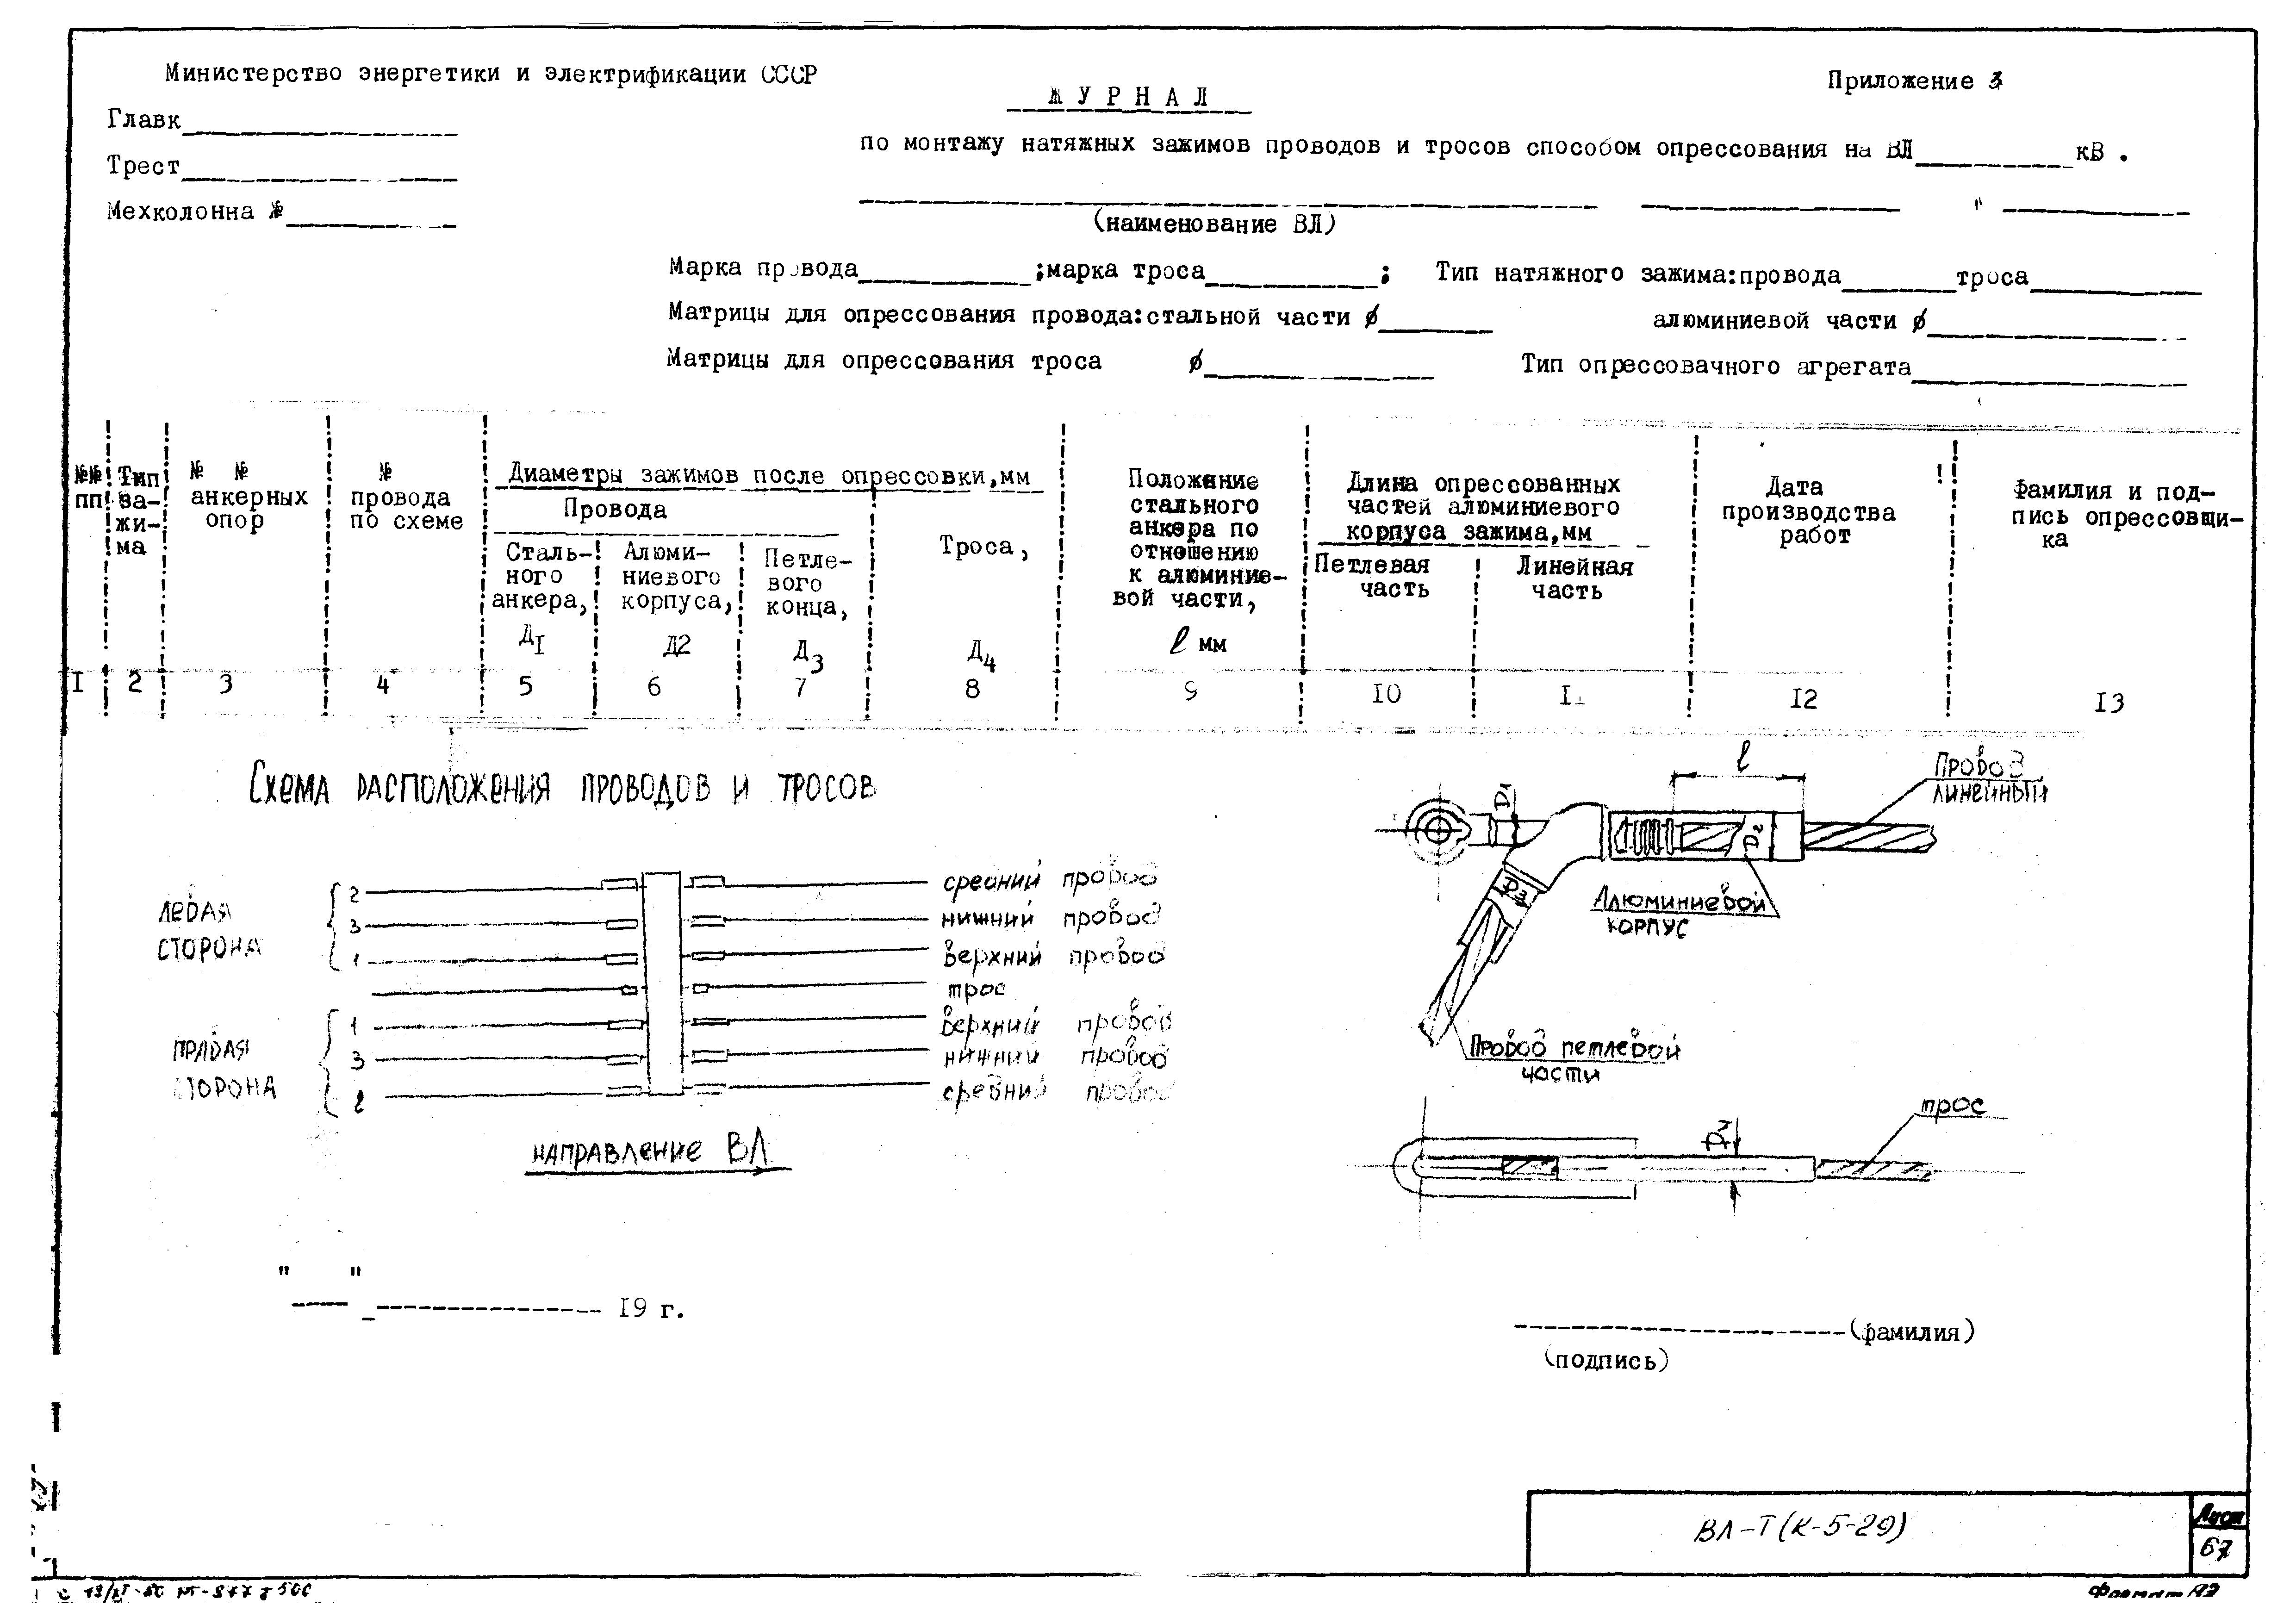 Технологическая карта К-5-29-7